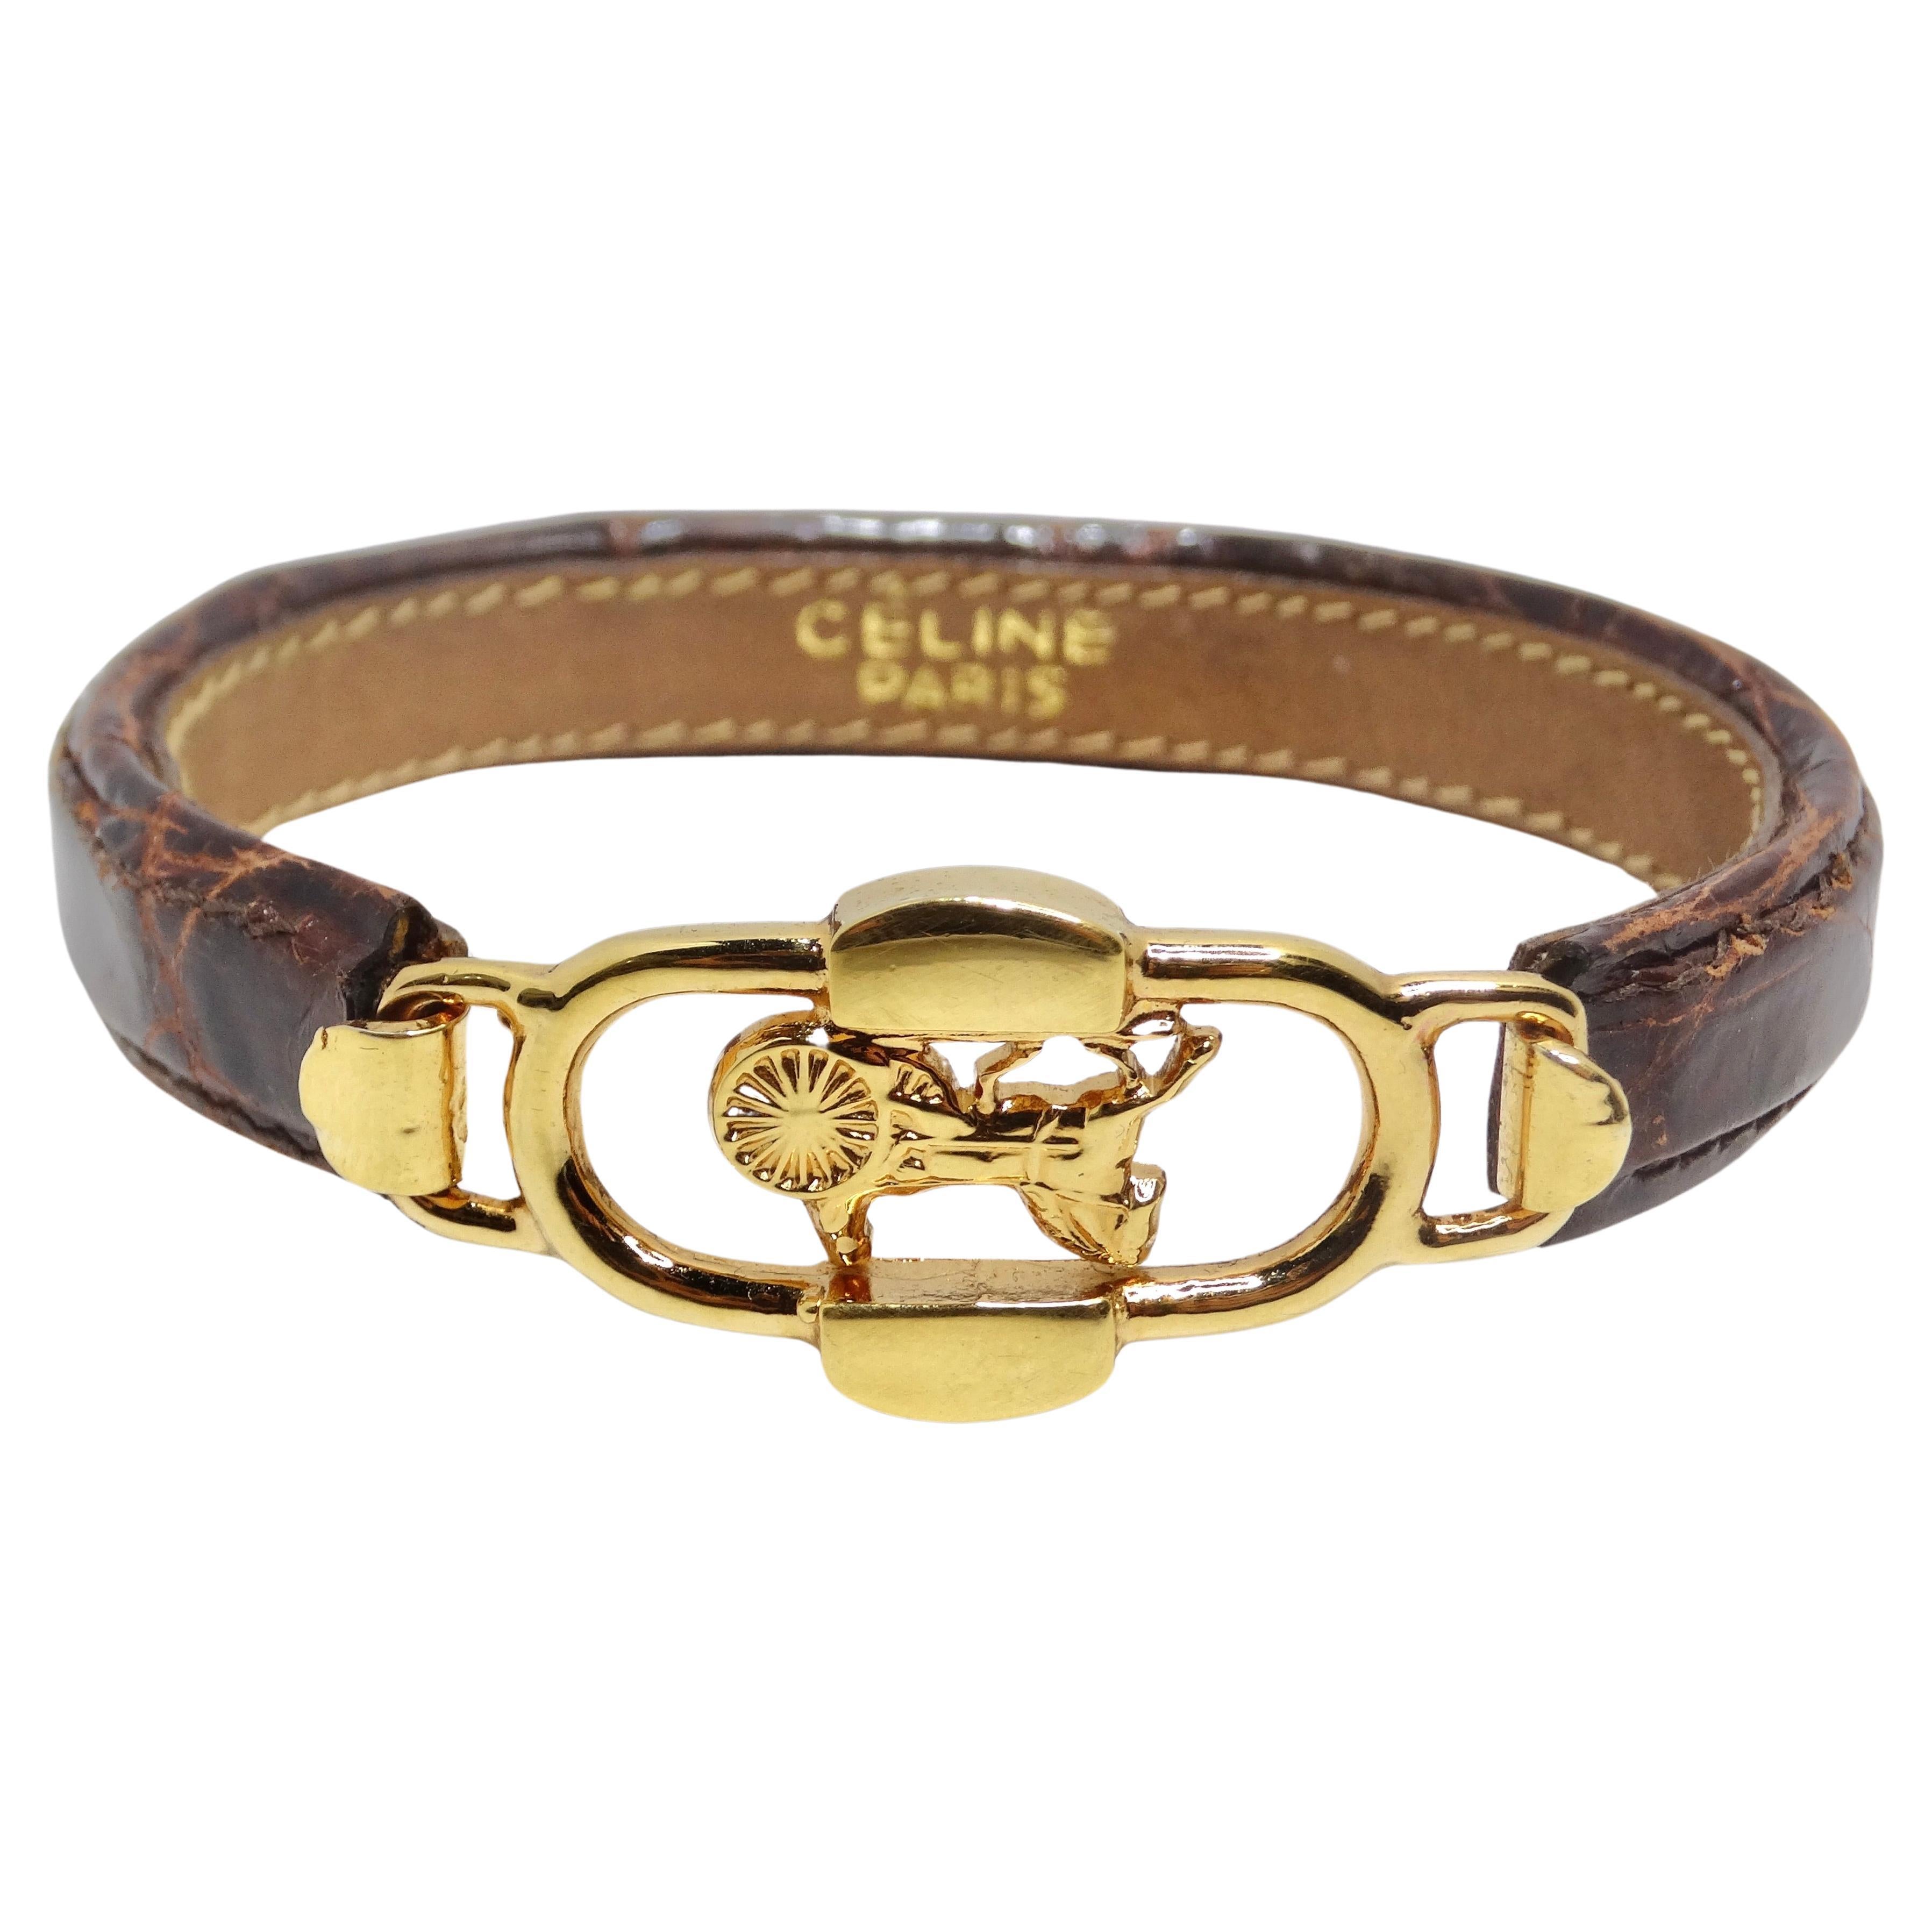 Celine 1990s Gold Tone Horse Emblem Leather Bracelet For Sale